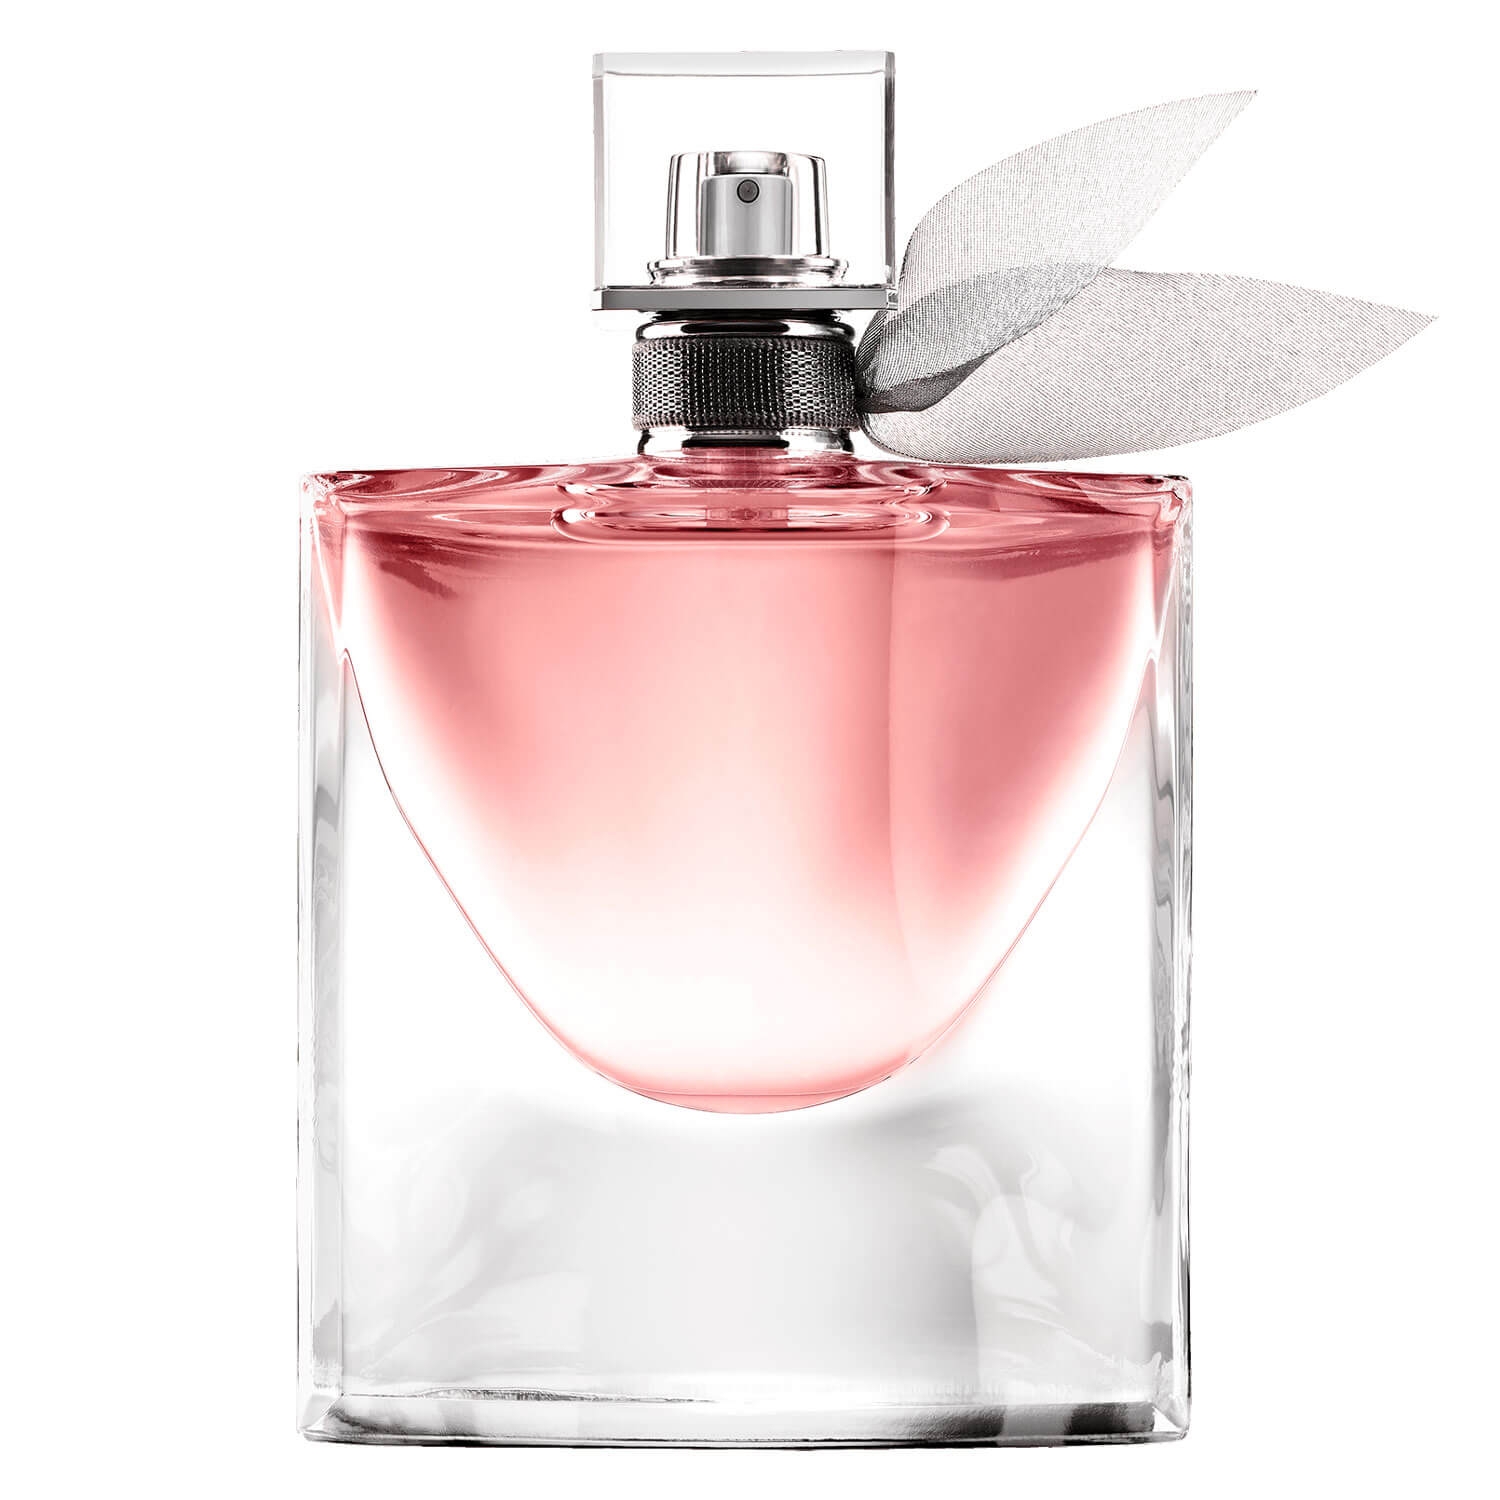 Produktbild von La Vie est Belle - Eau de Parfum